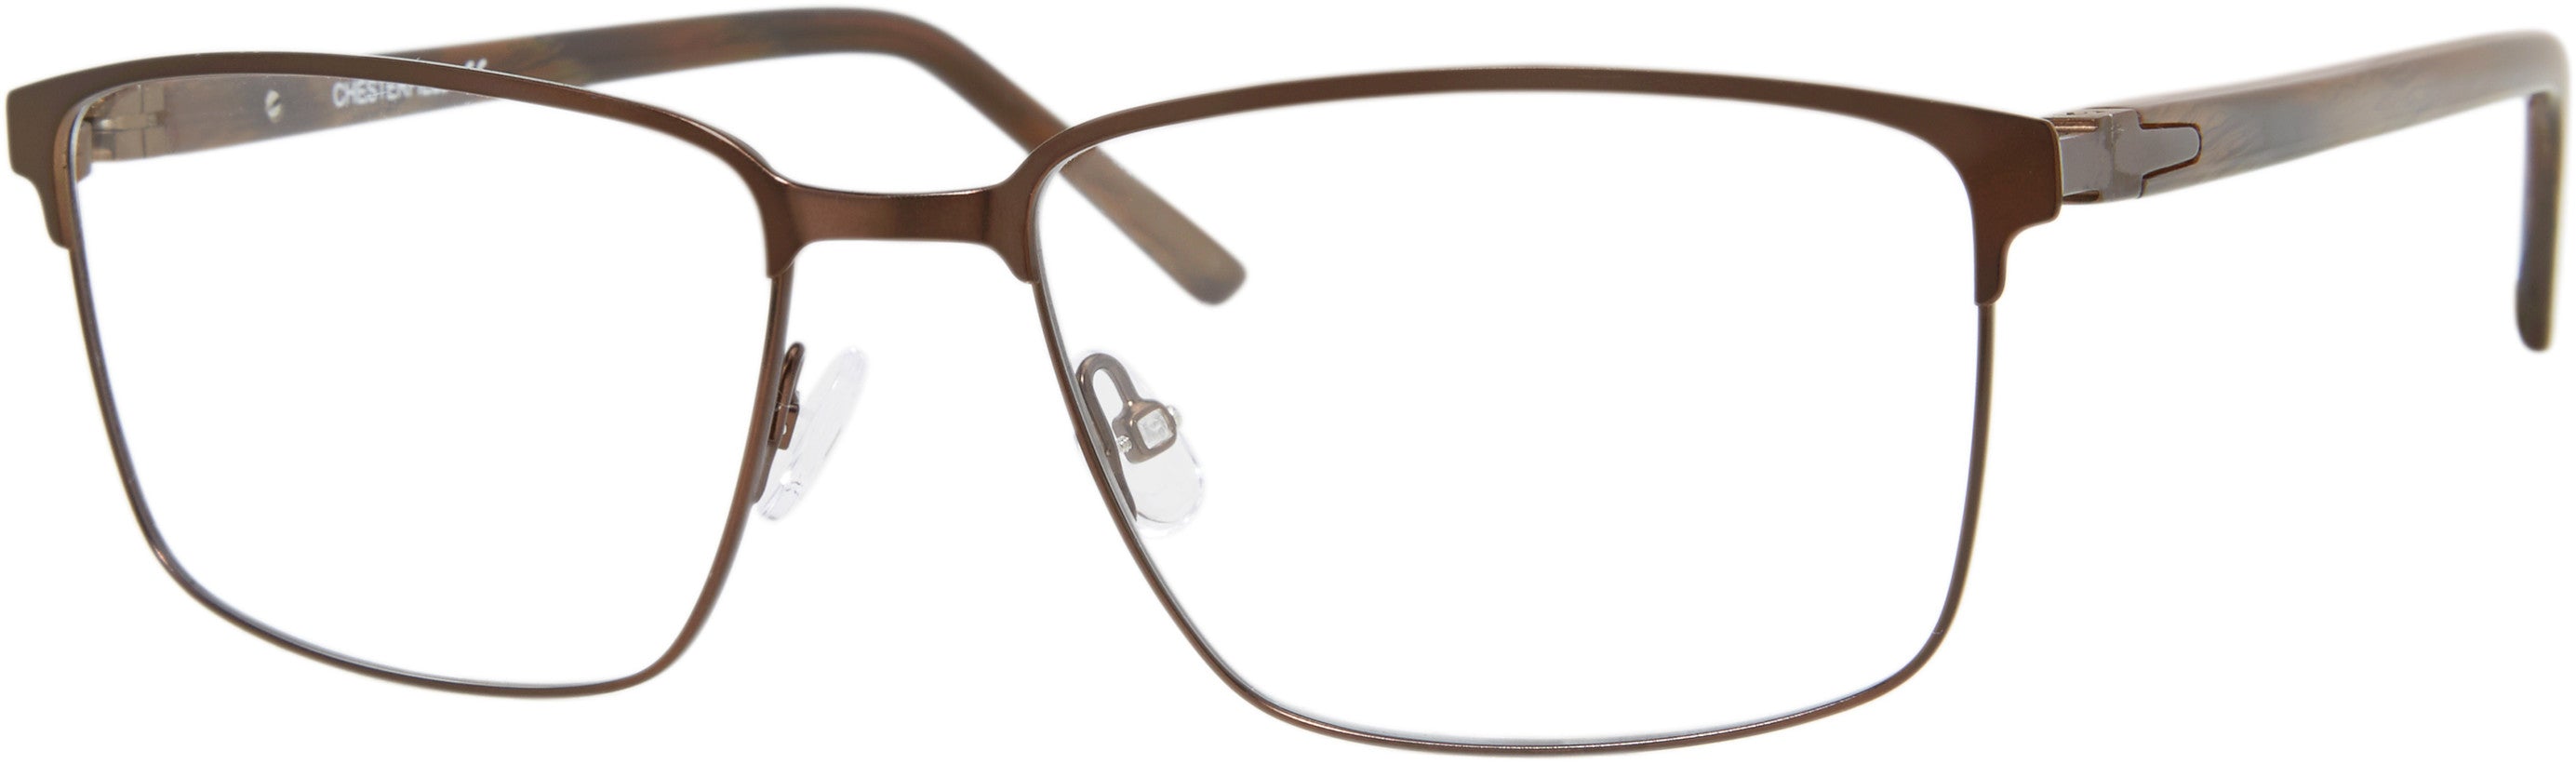  Chesterfield 78XL Square Eyeglasses 009Q-009Q  Brown (00 Demo Lens)